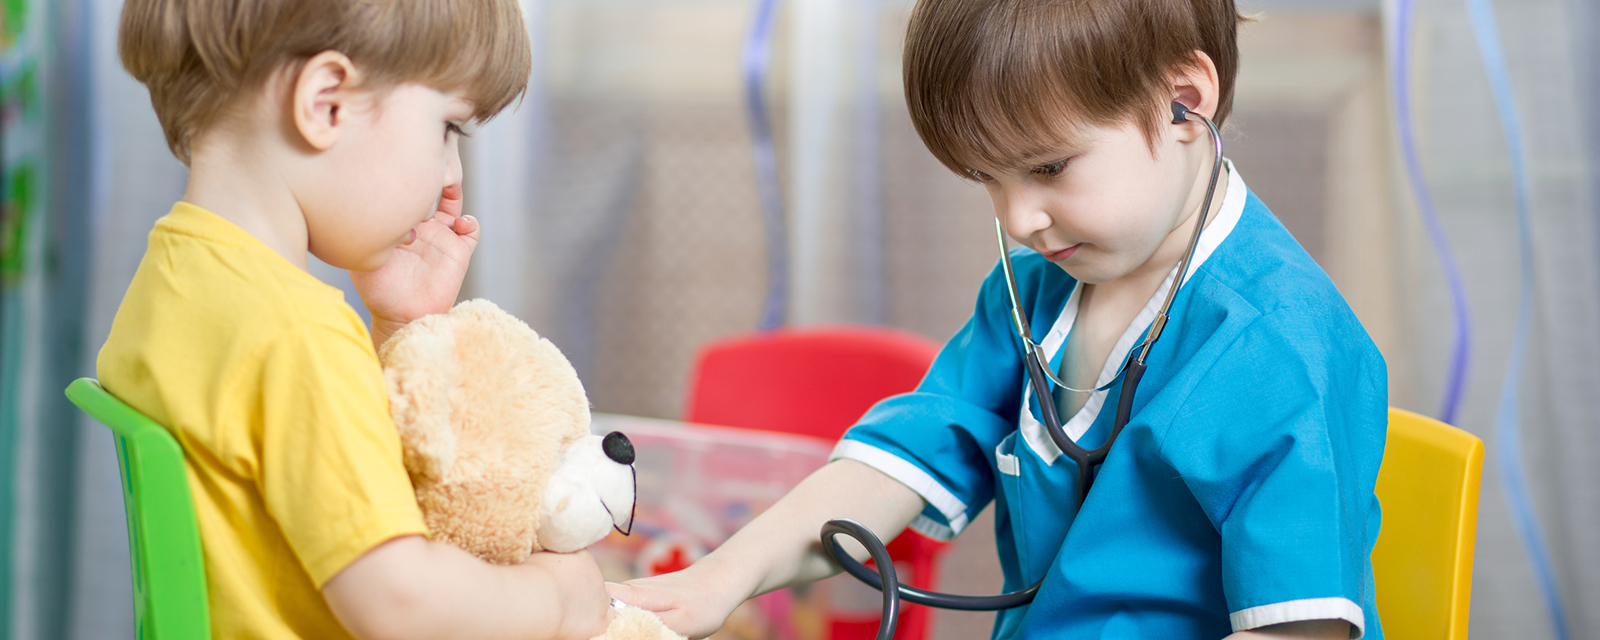 Kinder untersuchen Stoffbären mit Stetoskop